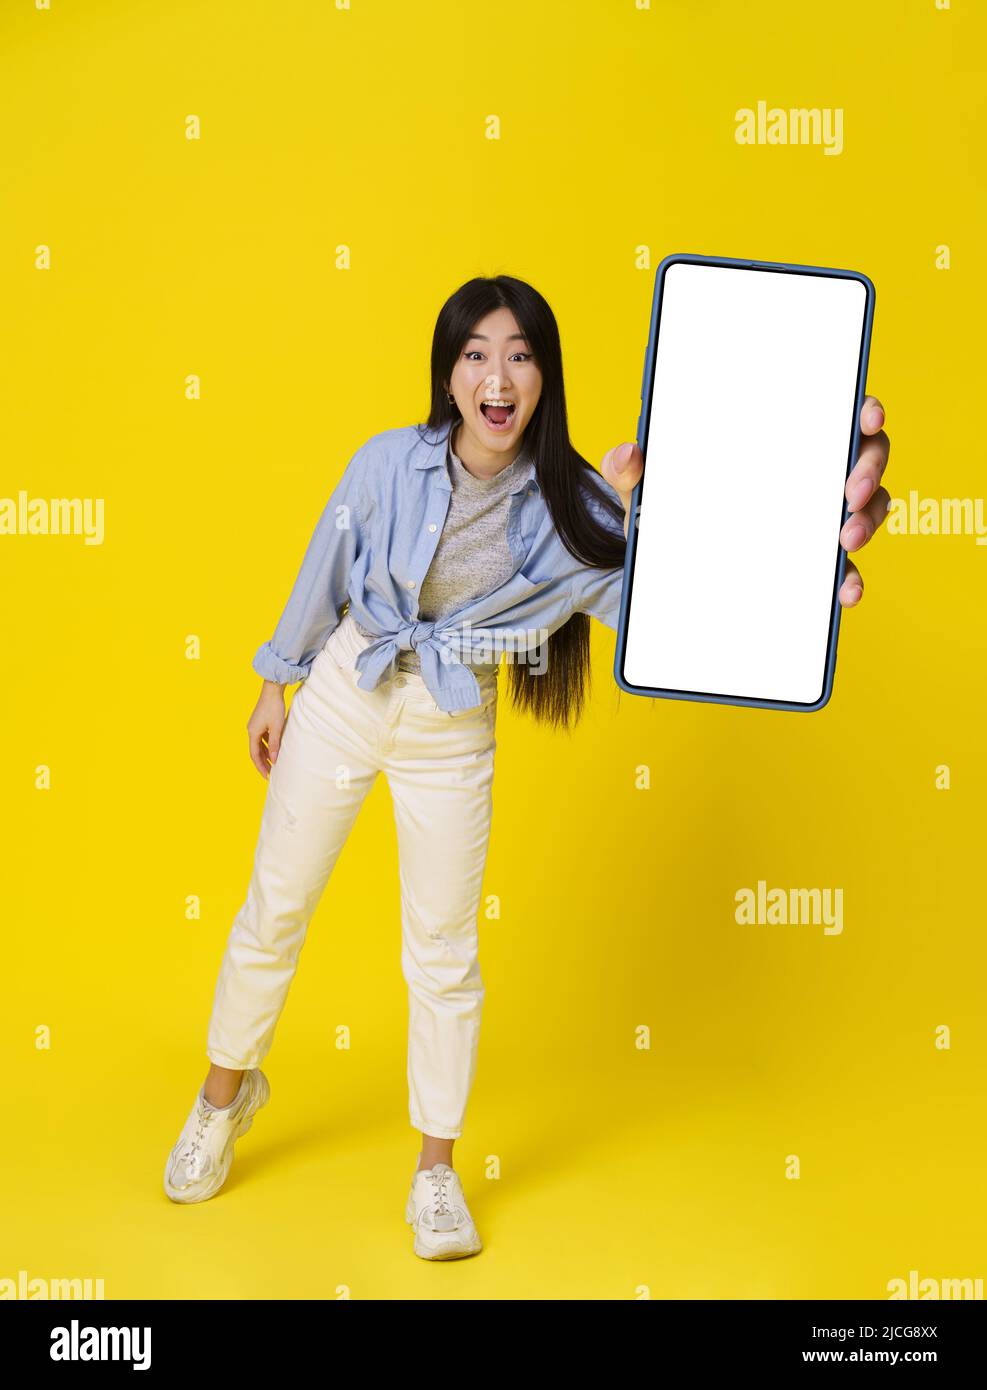 Giovane ragazza asiatica in casual happy holding smartphone mostra schermo bianco pubblicità app mobile e sorriso eccitato su fotocamera isolato su sfondo giallo. Grande offerta. Posizionamento del prodotto. Foto Stock